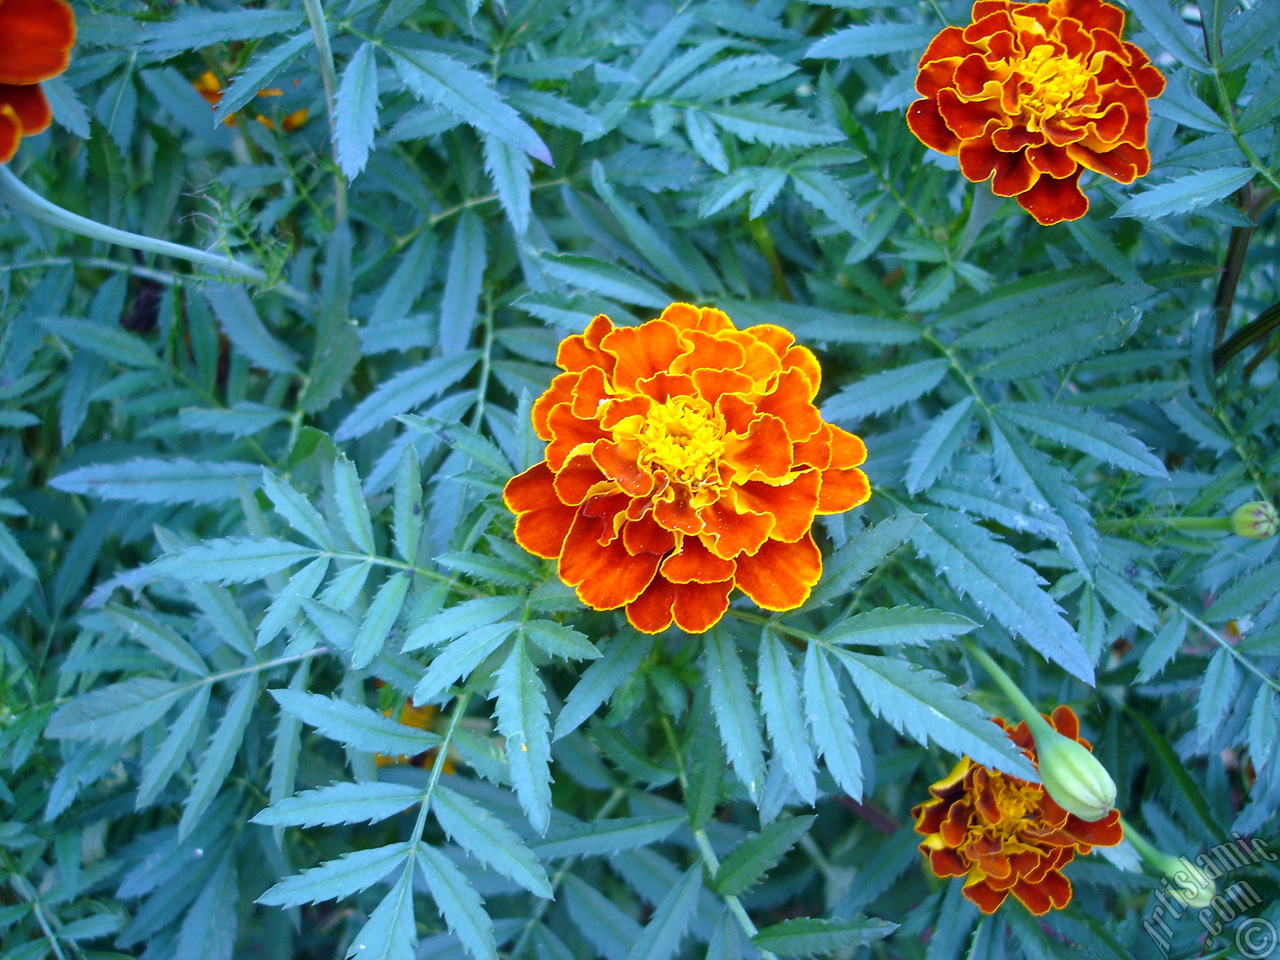 Marigold flower.
